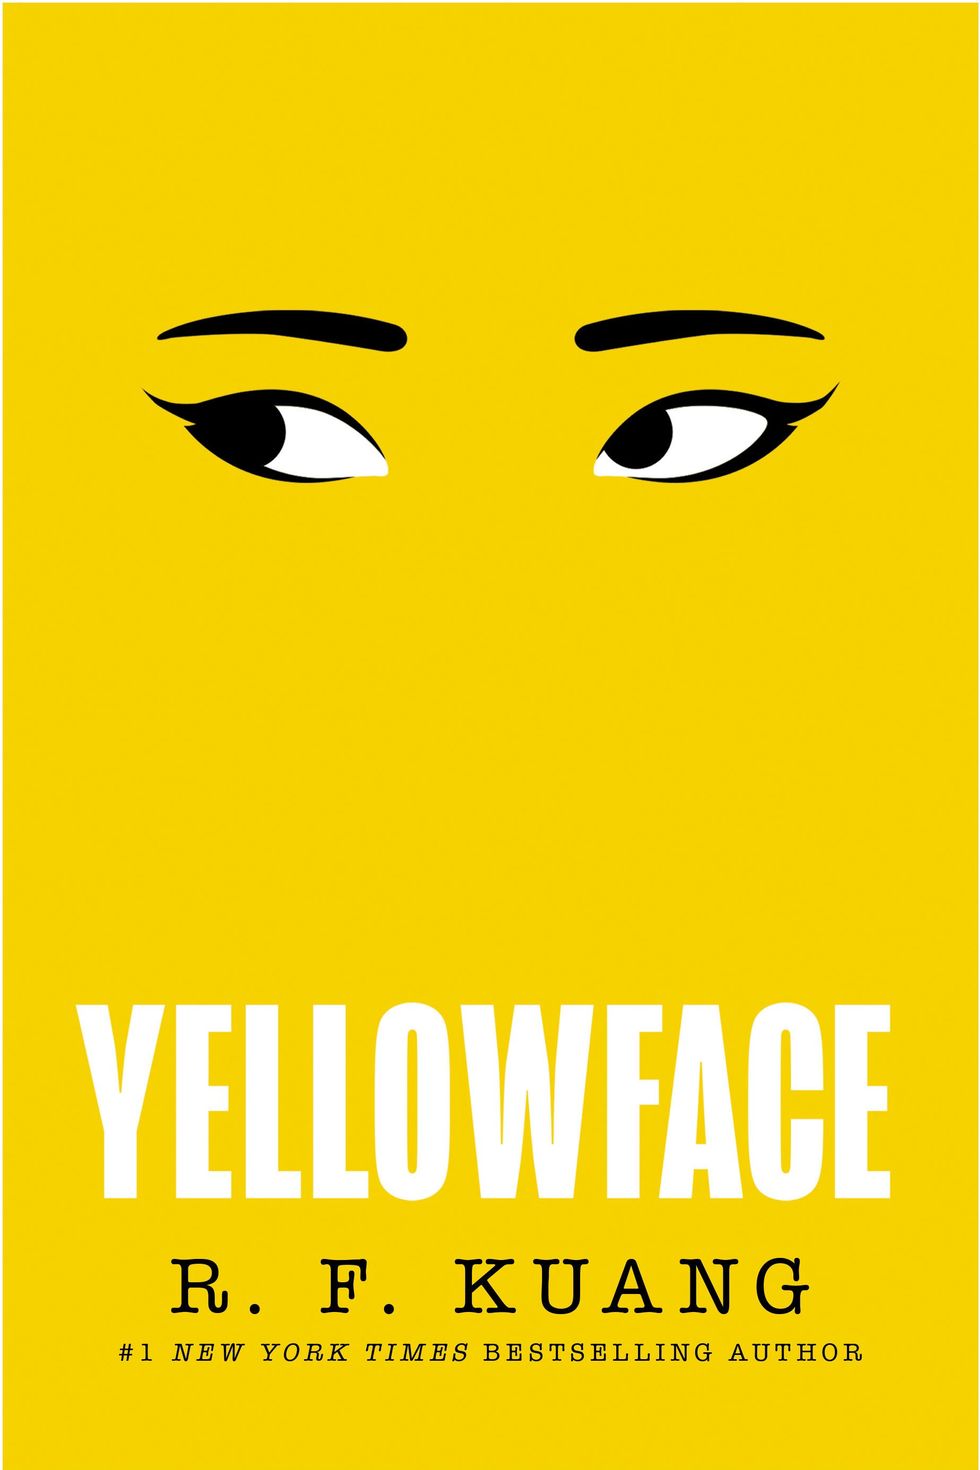 R.F. Kuang, 'Yellowface'